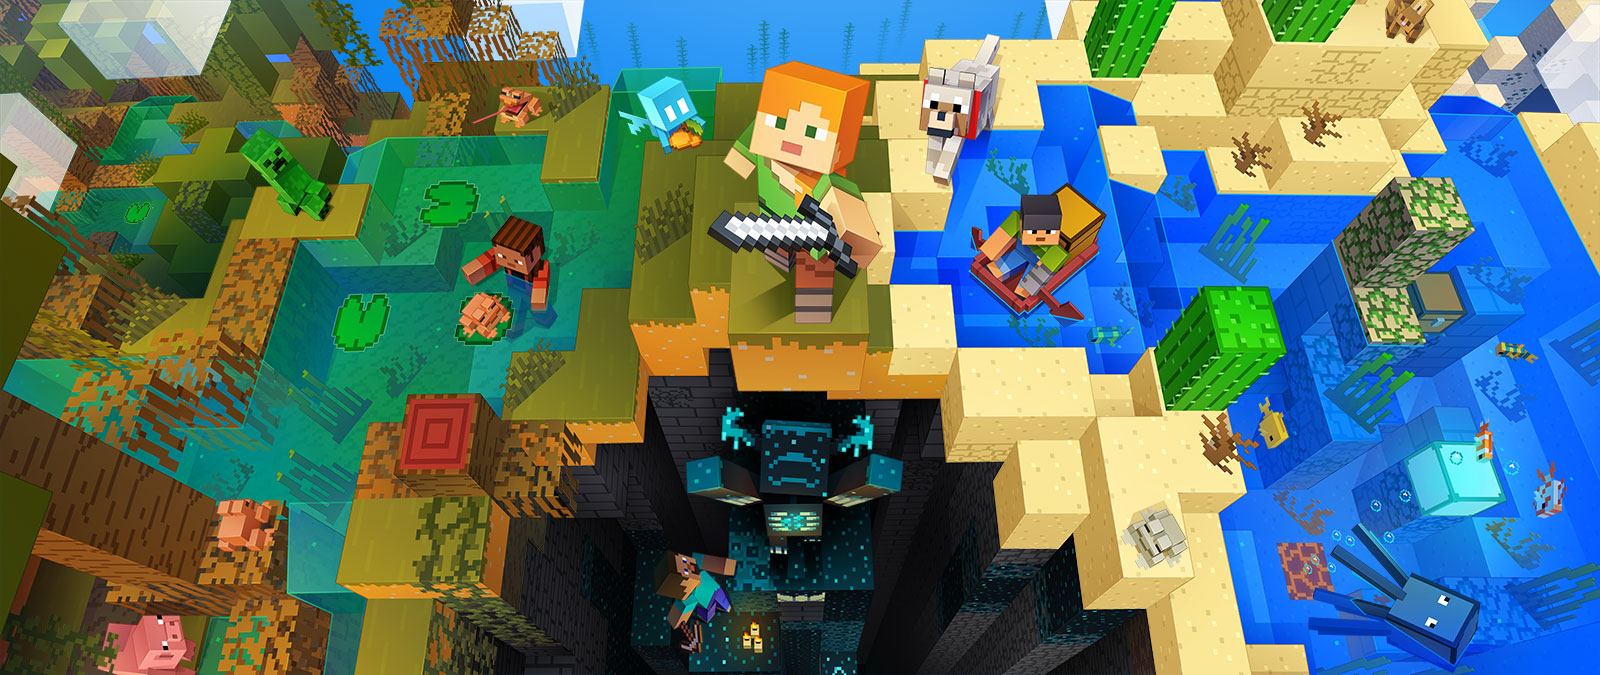 Minecraftin hahmoja tekemässä erilaisia toimia Minecraftissa